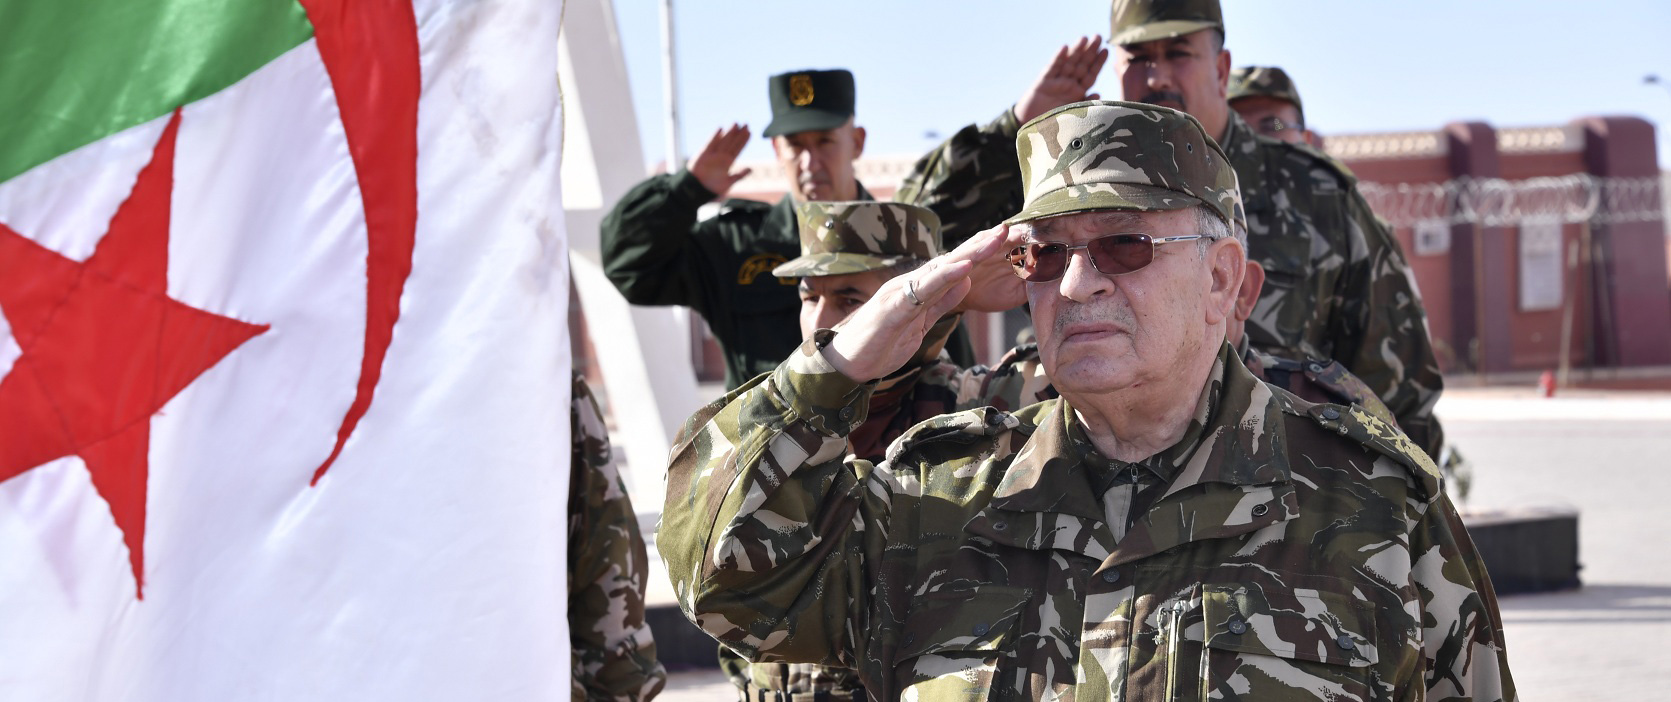 -قايد صالح: سيادة واستقرار الجزائر فوق كل اعتبار